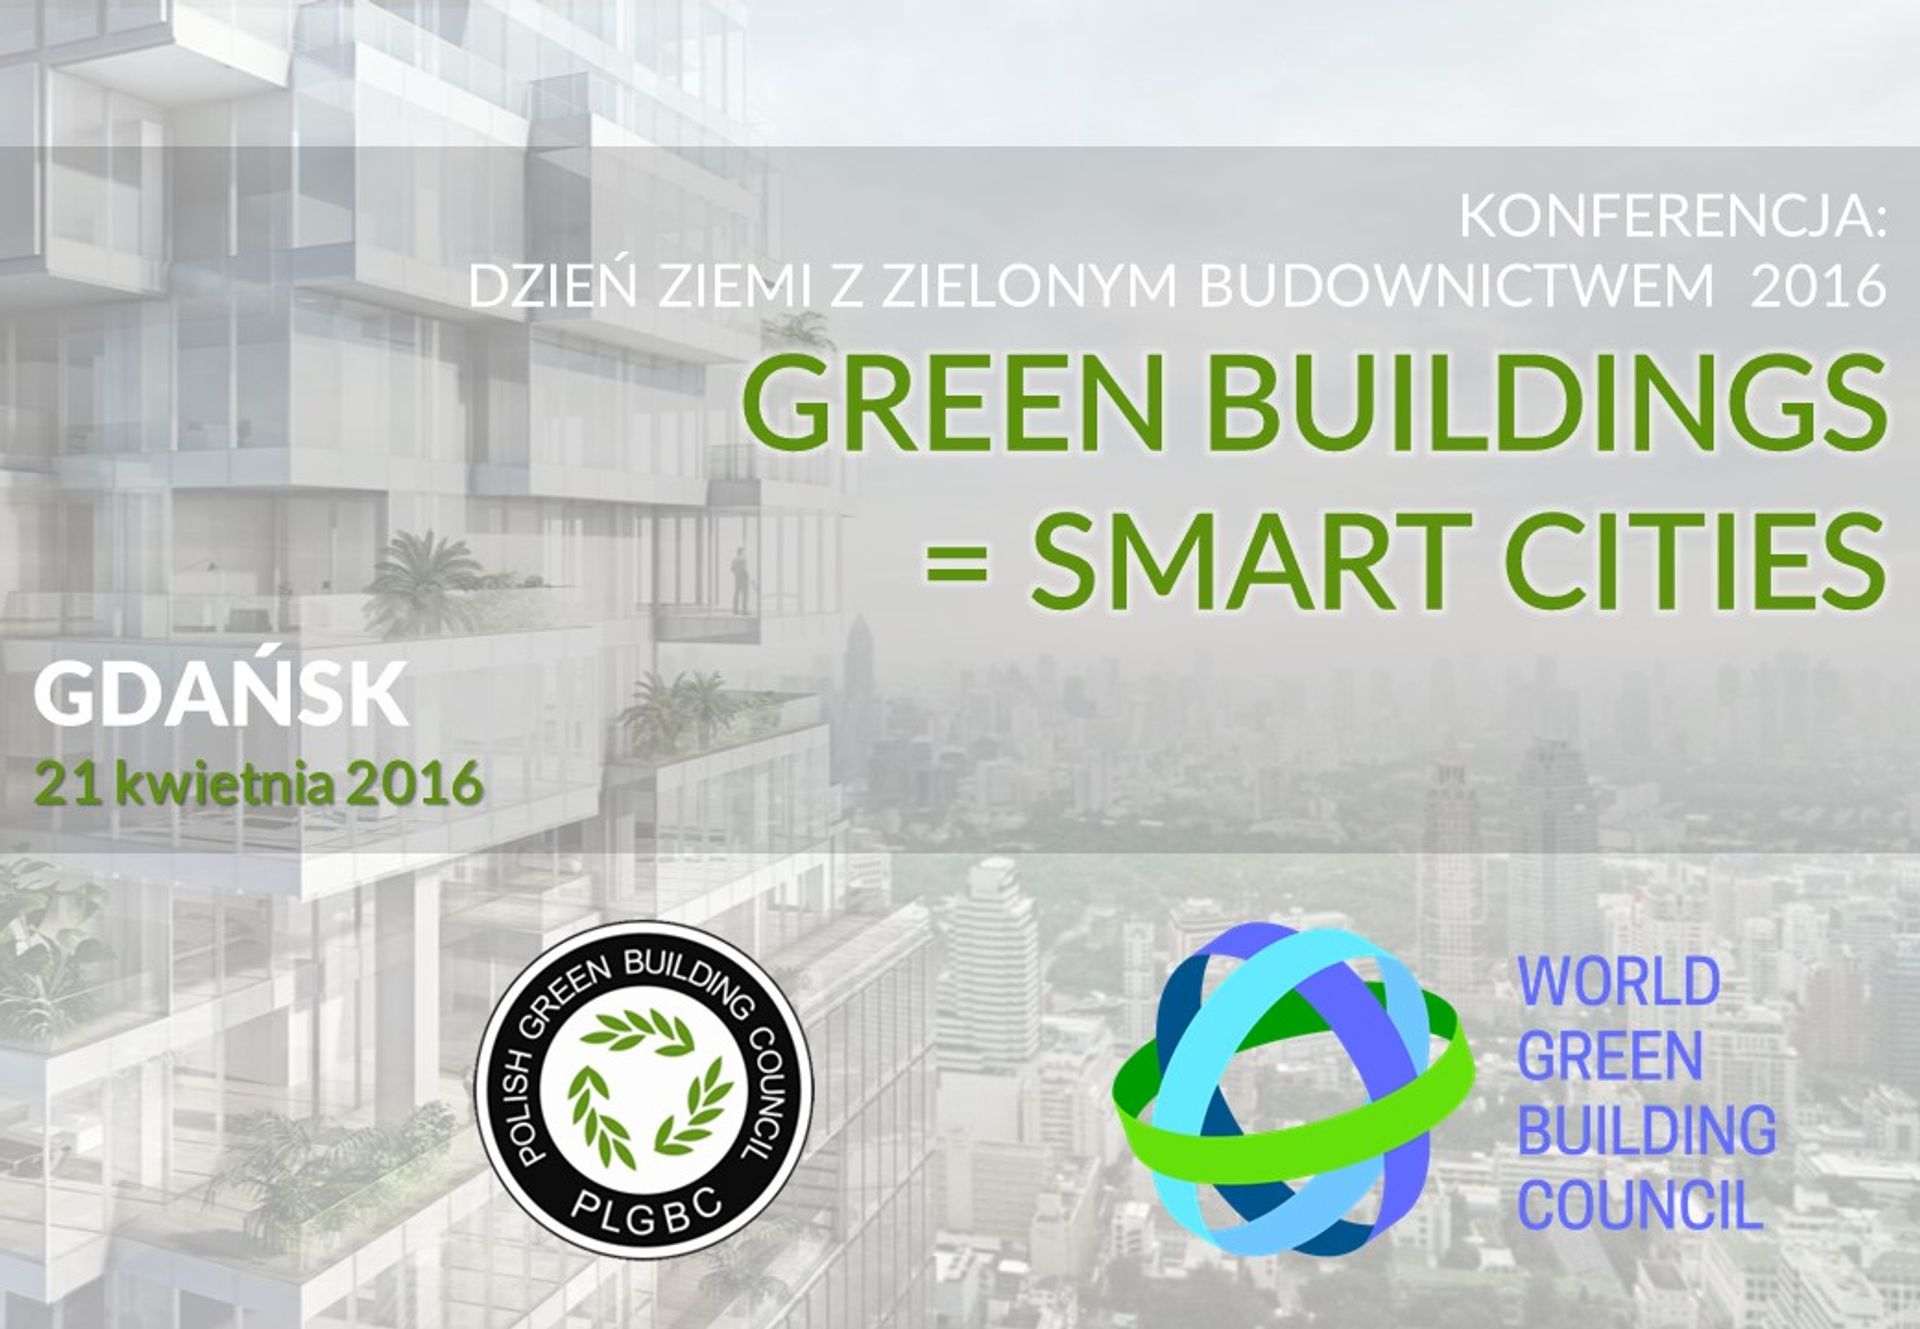  Dzień Ziemi z Zielonym Budownictwem GREEN BUILDINGS = SMART CITIES z udziałem World Green Building Council